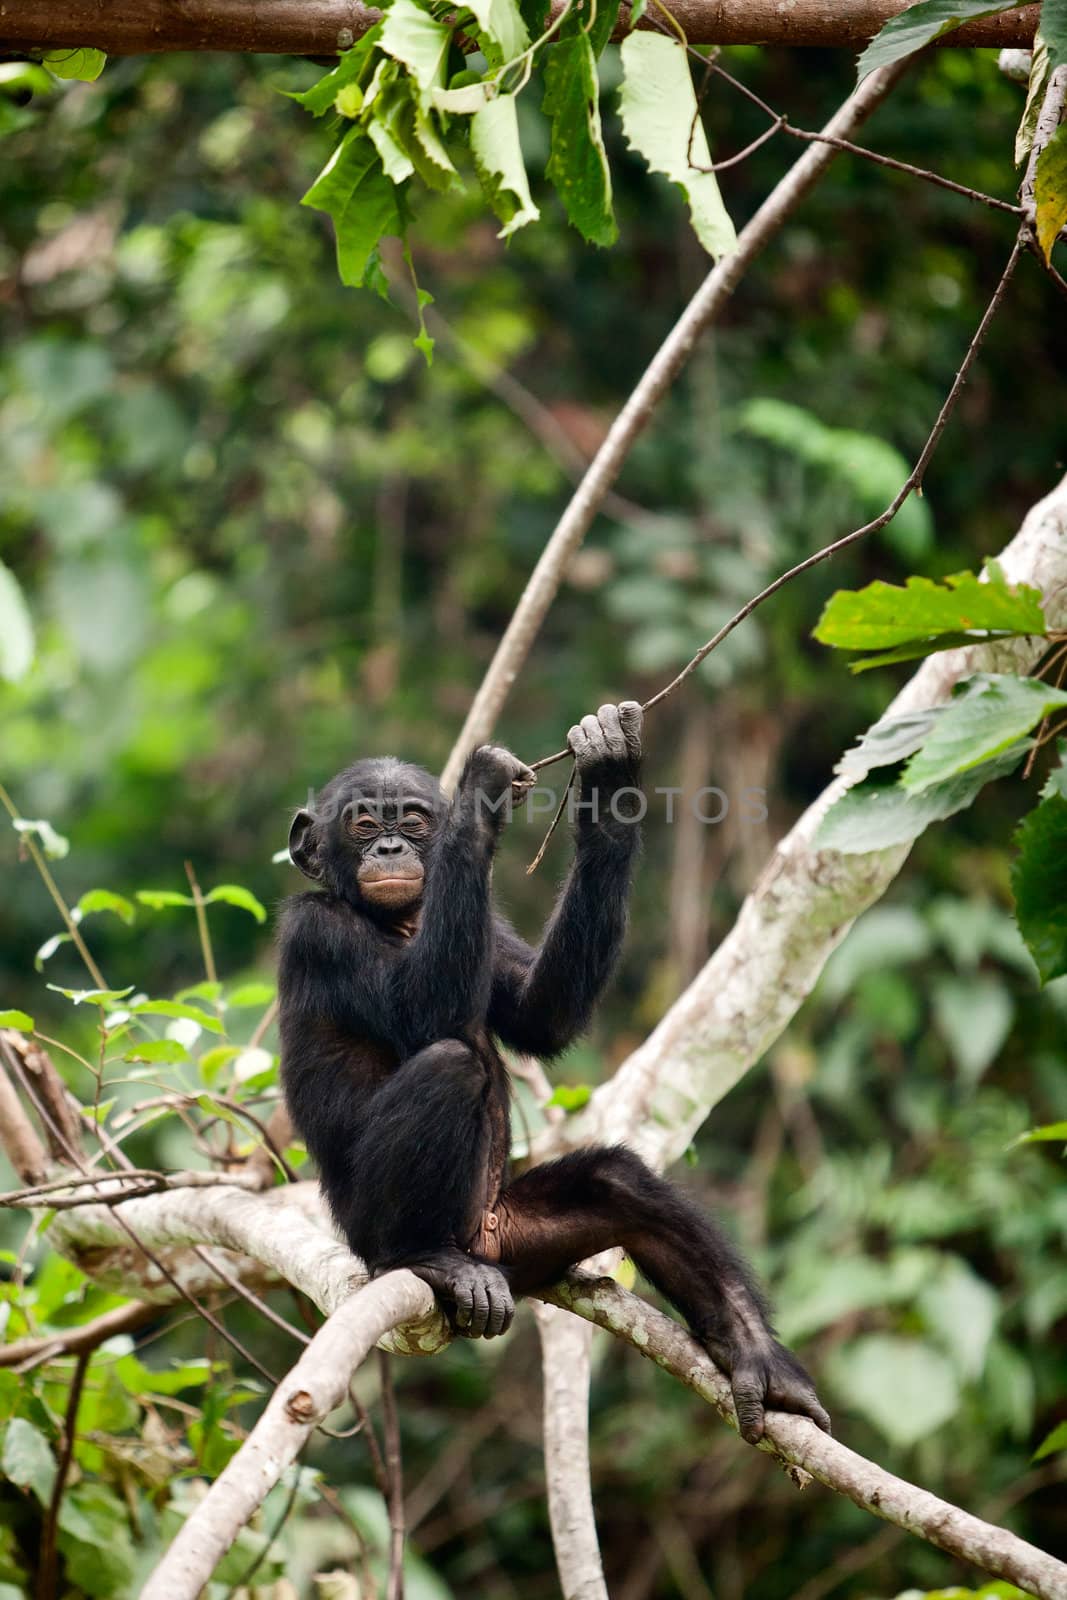  The cub Bonobo by SURZ